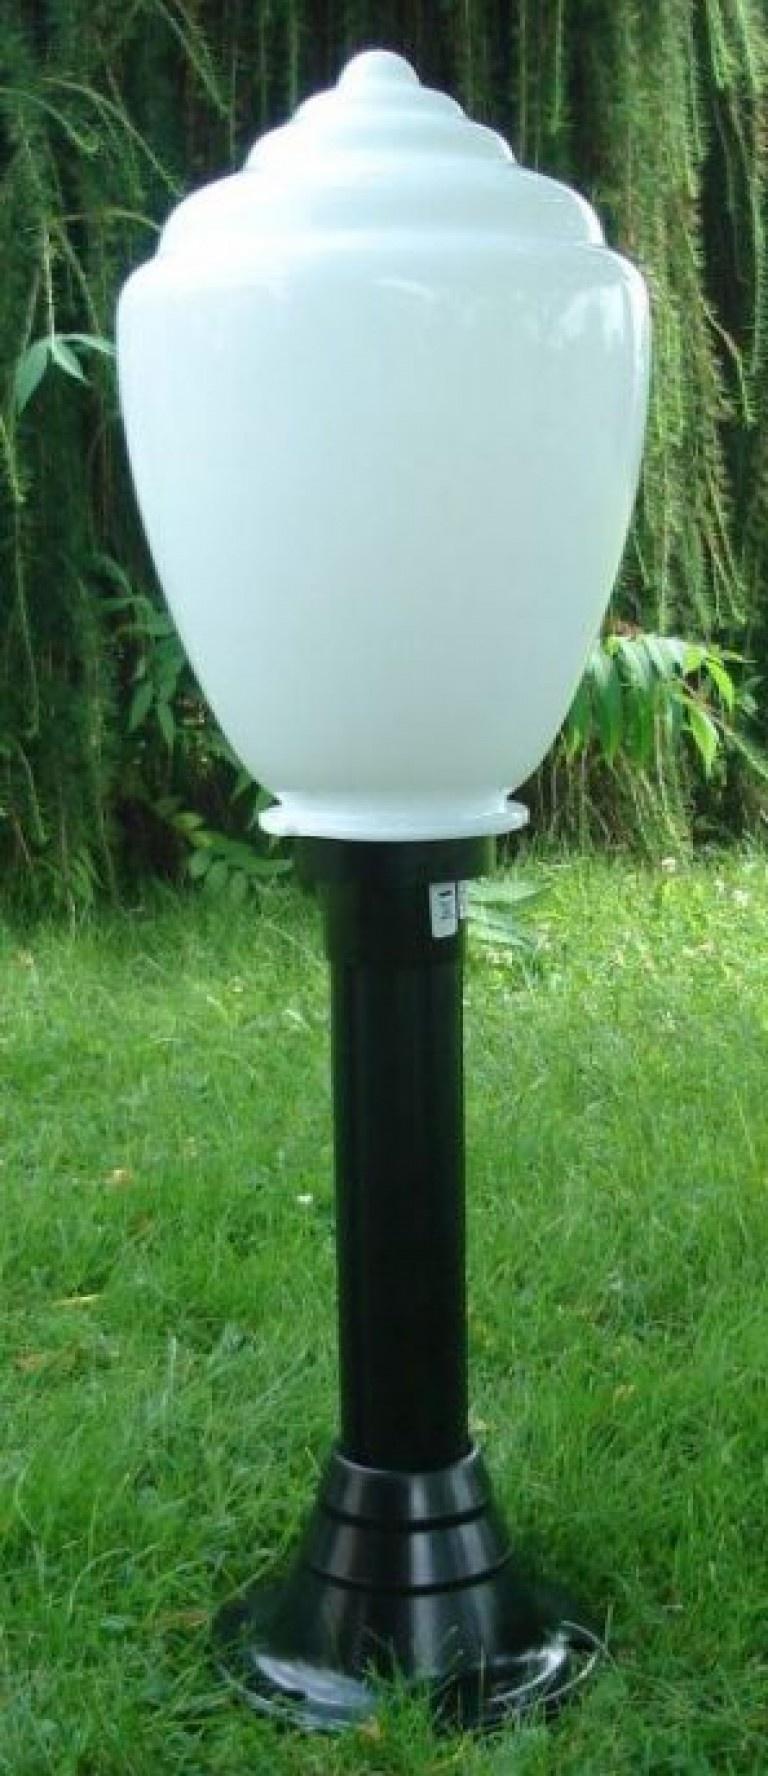 Lampy ogrodowe wys. 85 cm, klosz amfora 250 mm